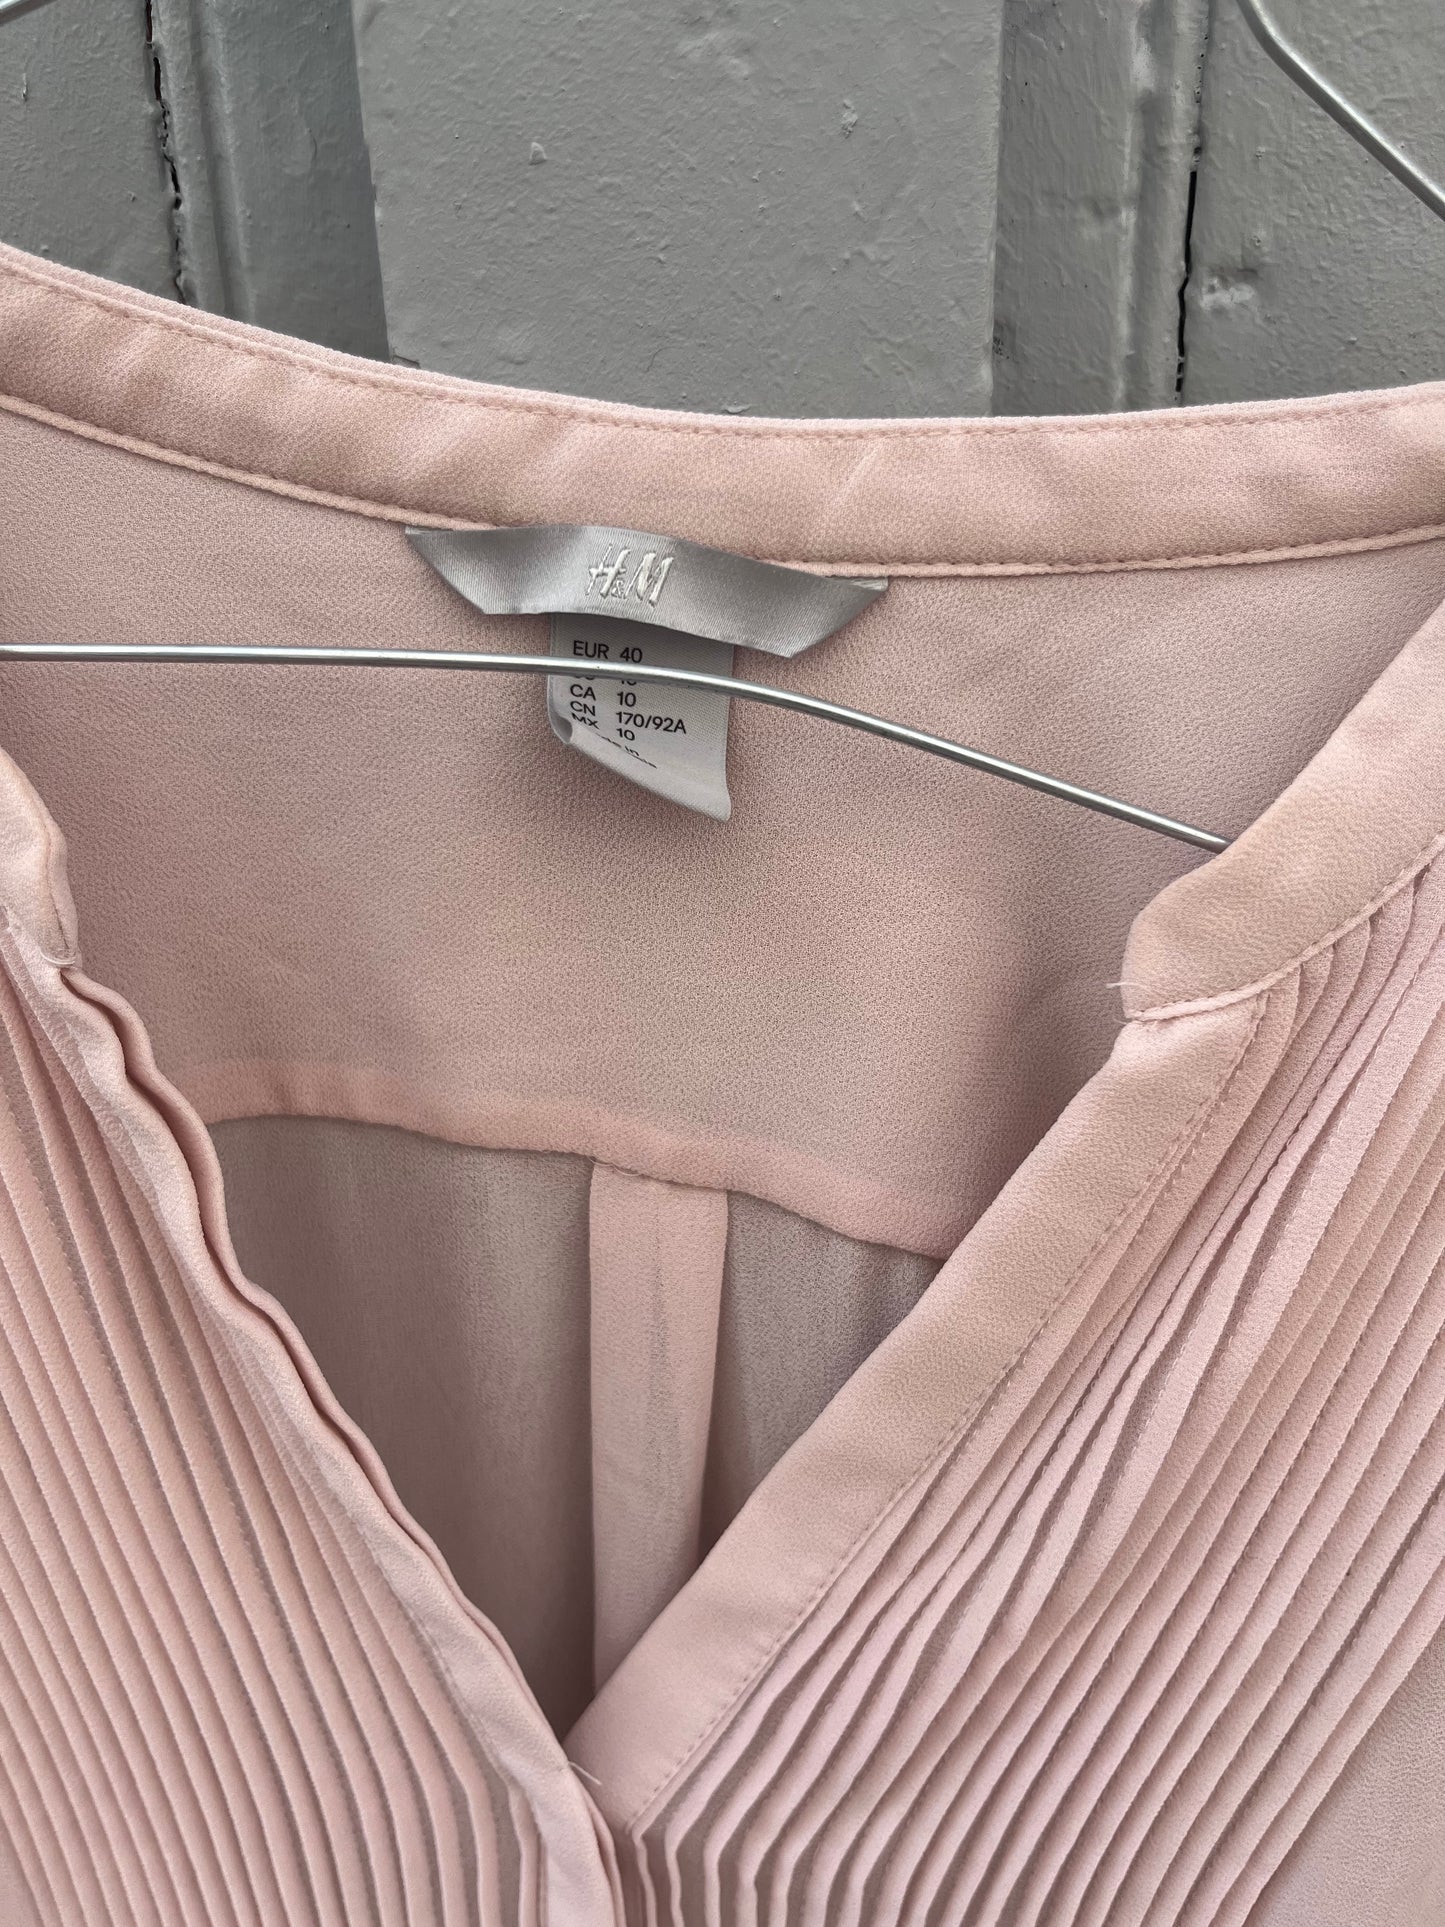 La blouse, H&M, taille 40